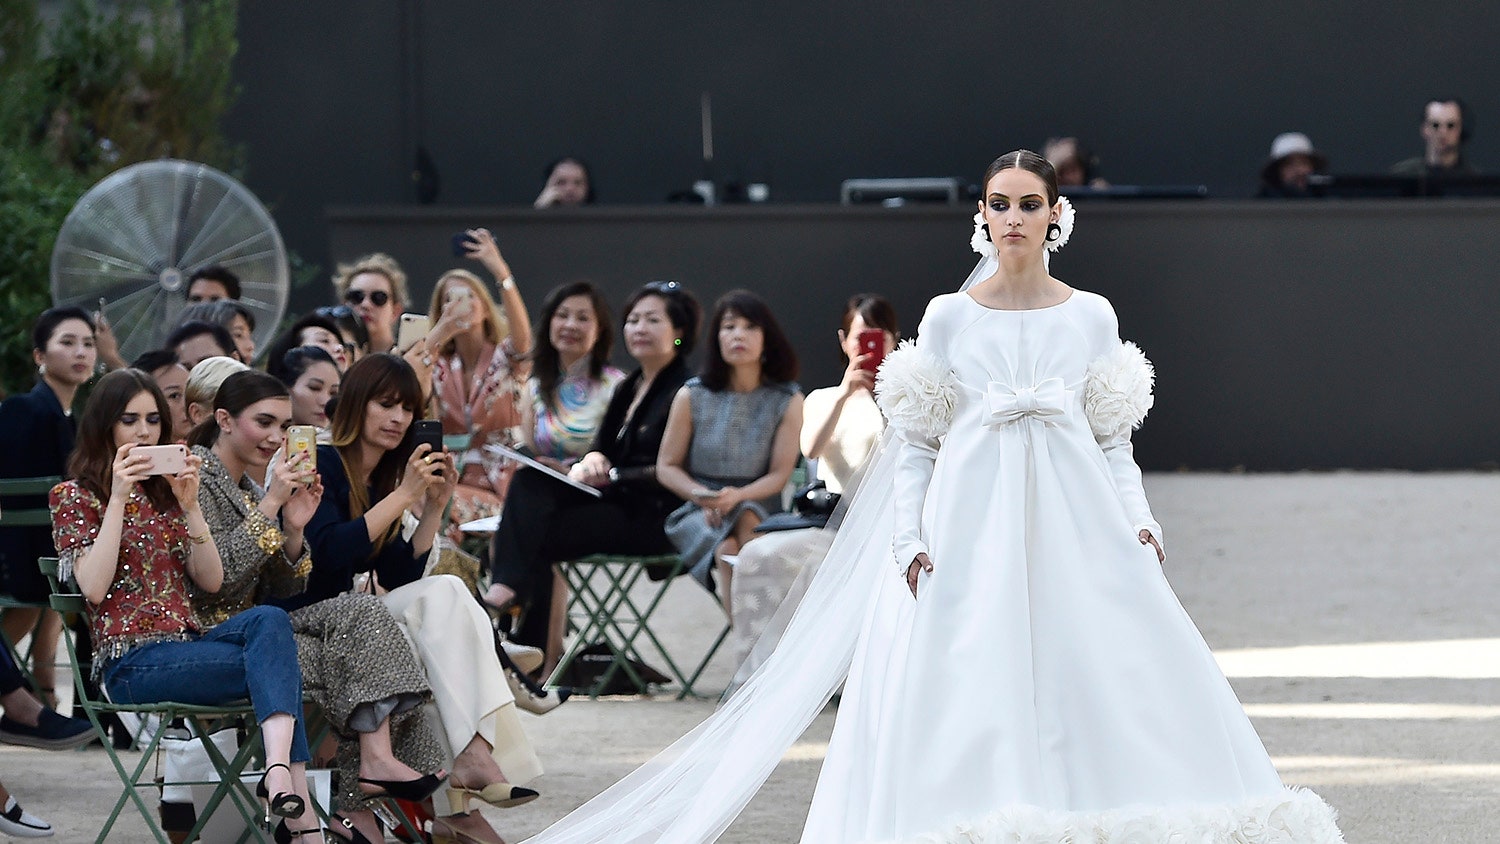 Показ Chanel Couture осеньзима 20172018 модели на подиуме и гости модного шоу